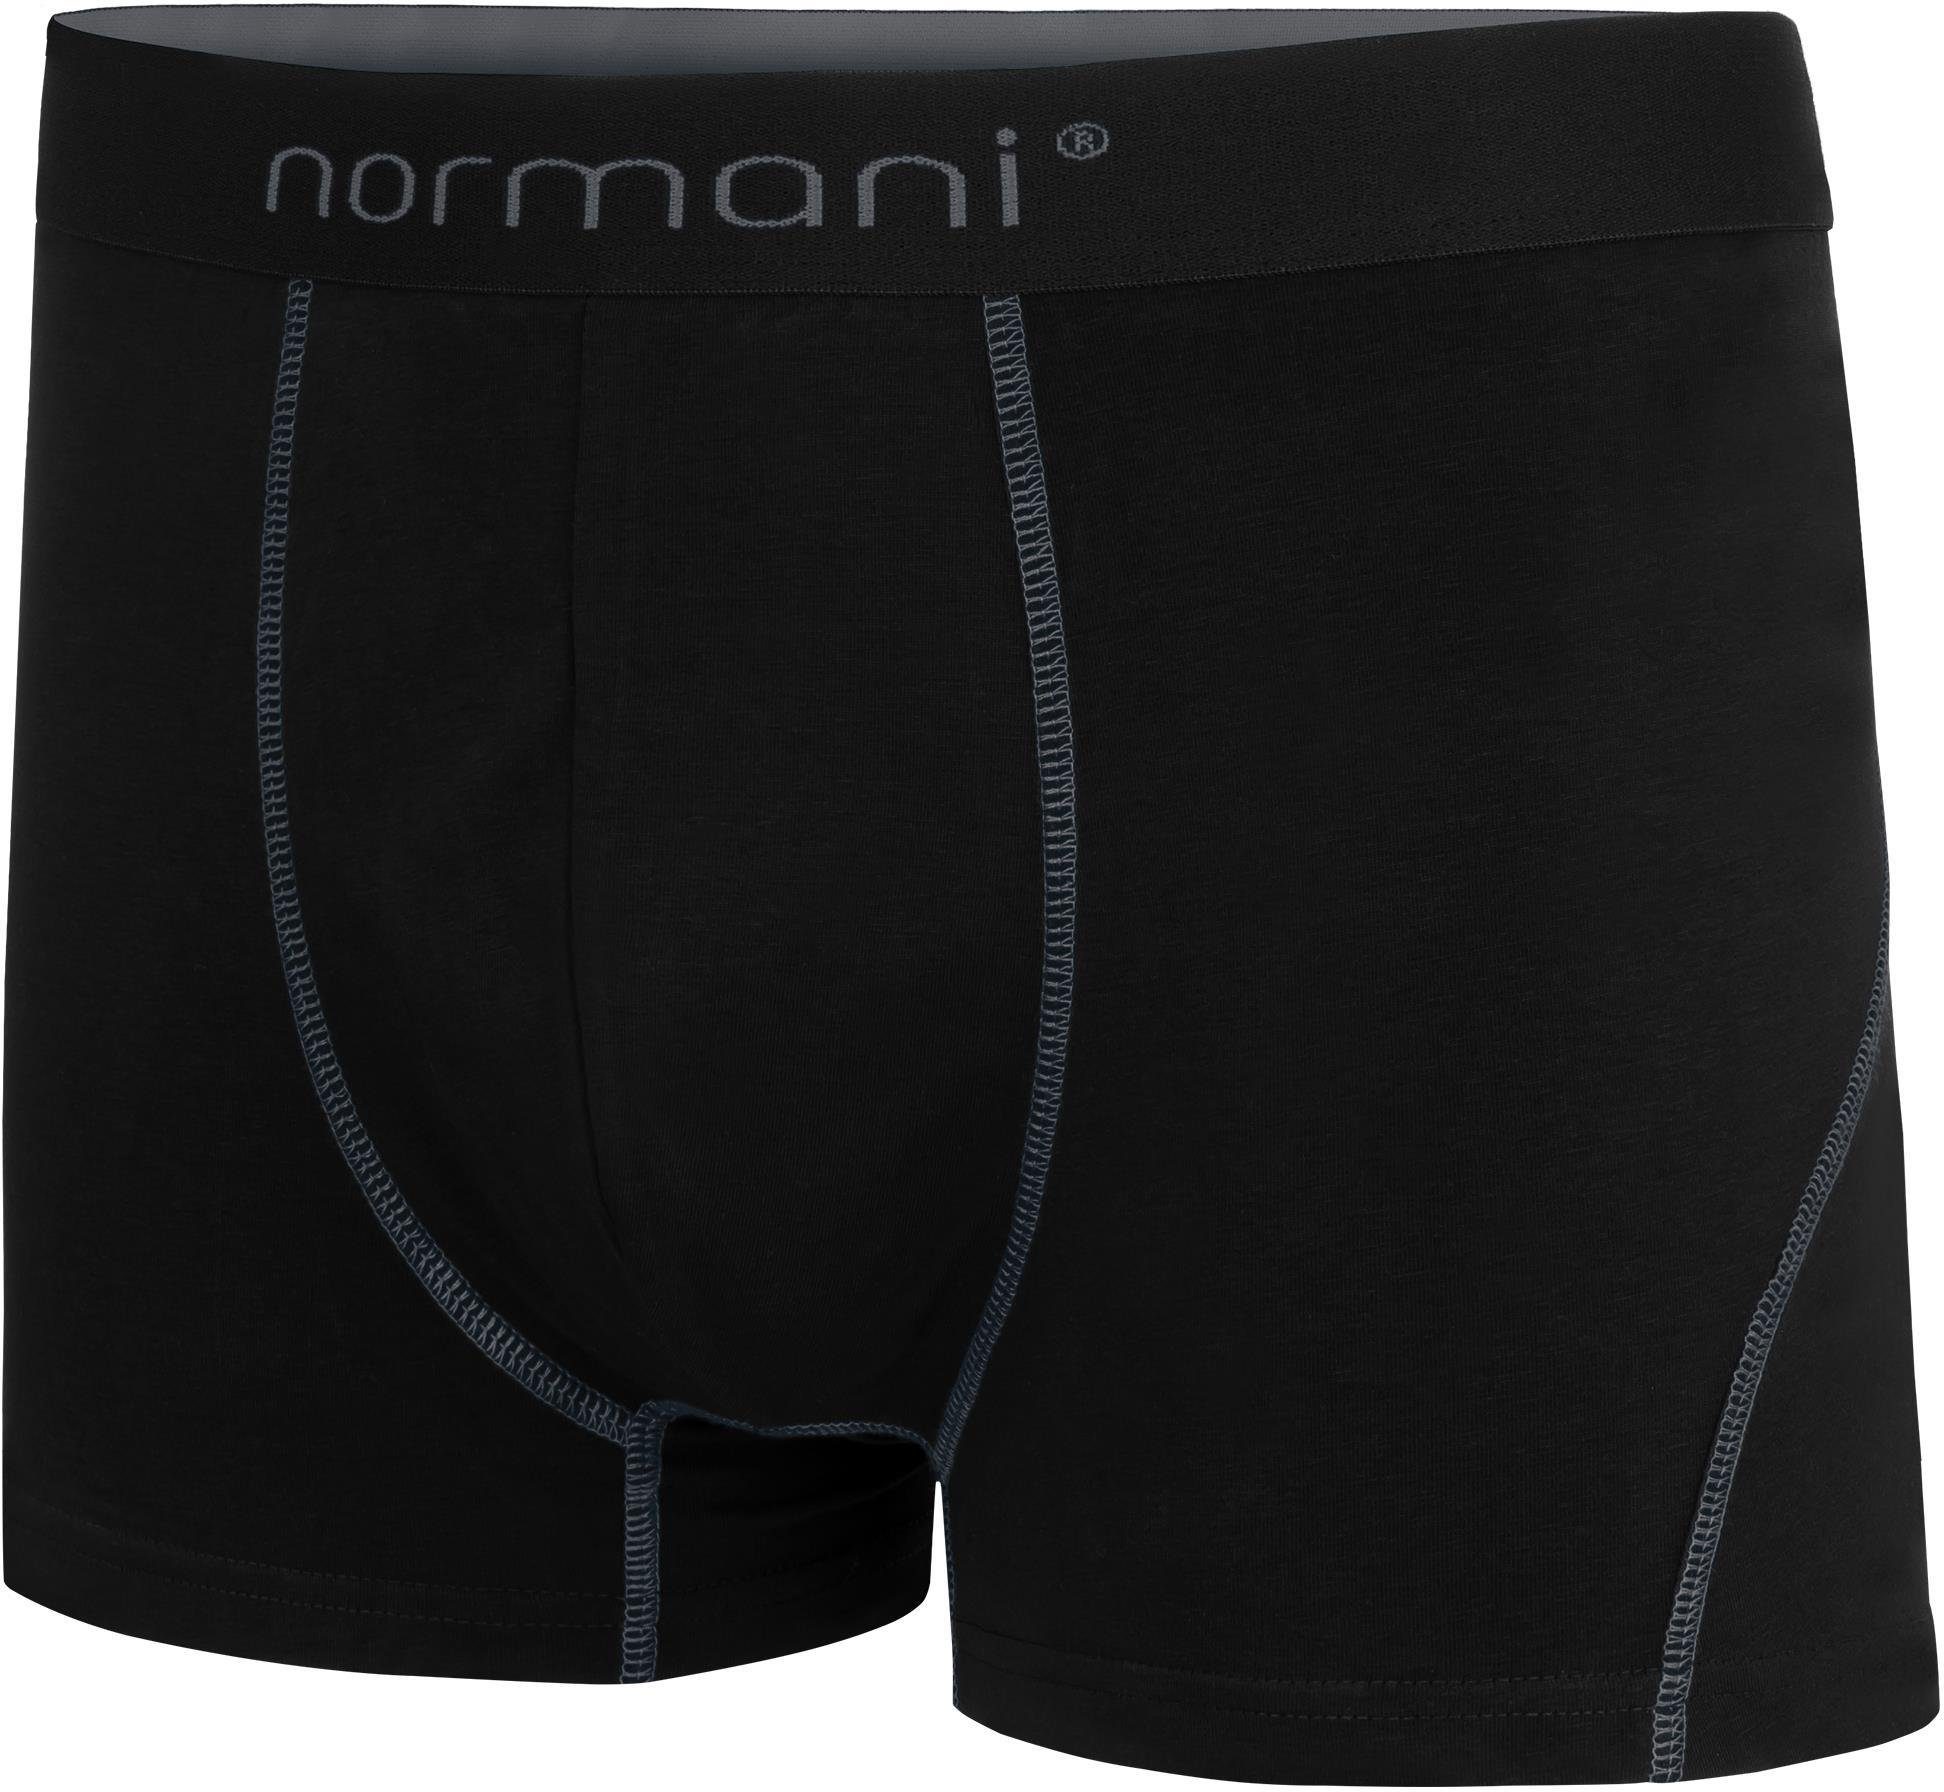 Baumwolle Herren atmungsaktiver für Unterhose 6 Boxershorts aus Baumwoll-Boxershorts Grau Männer normani